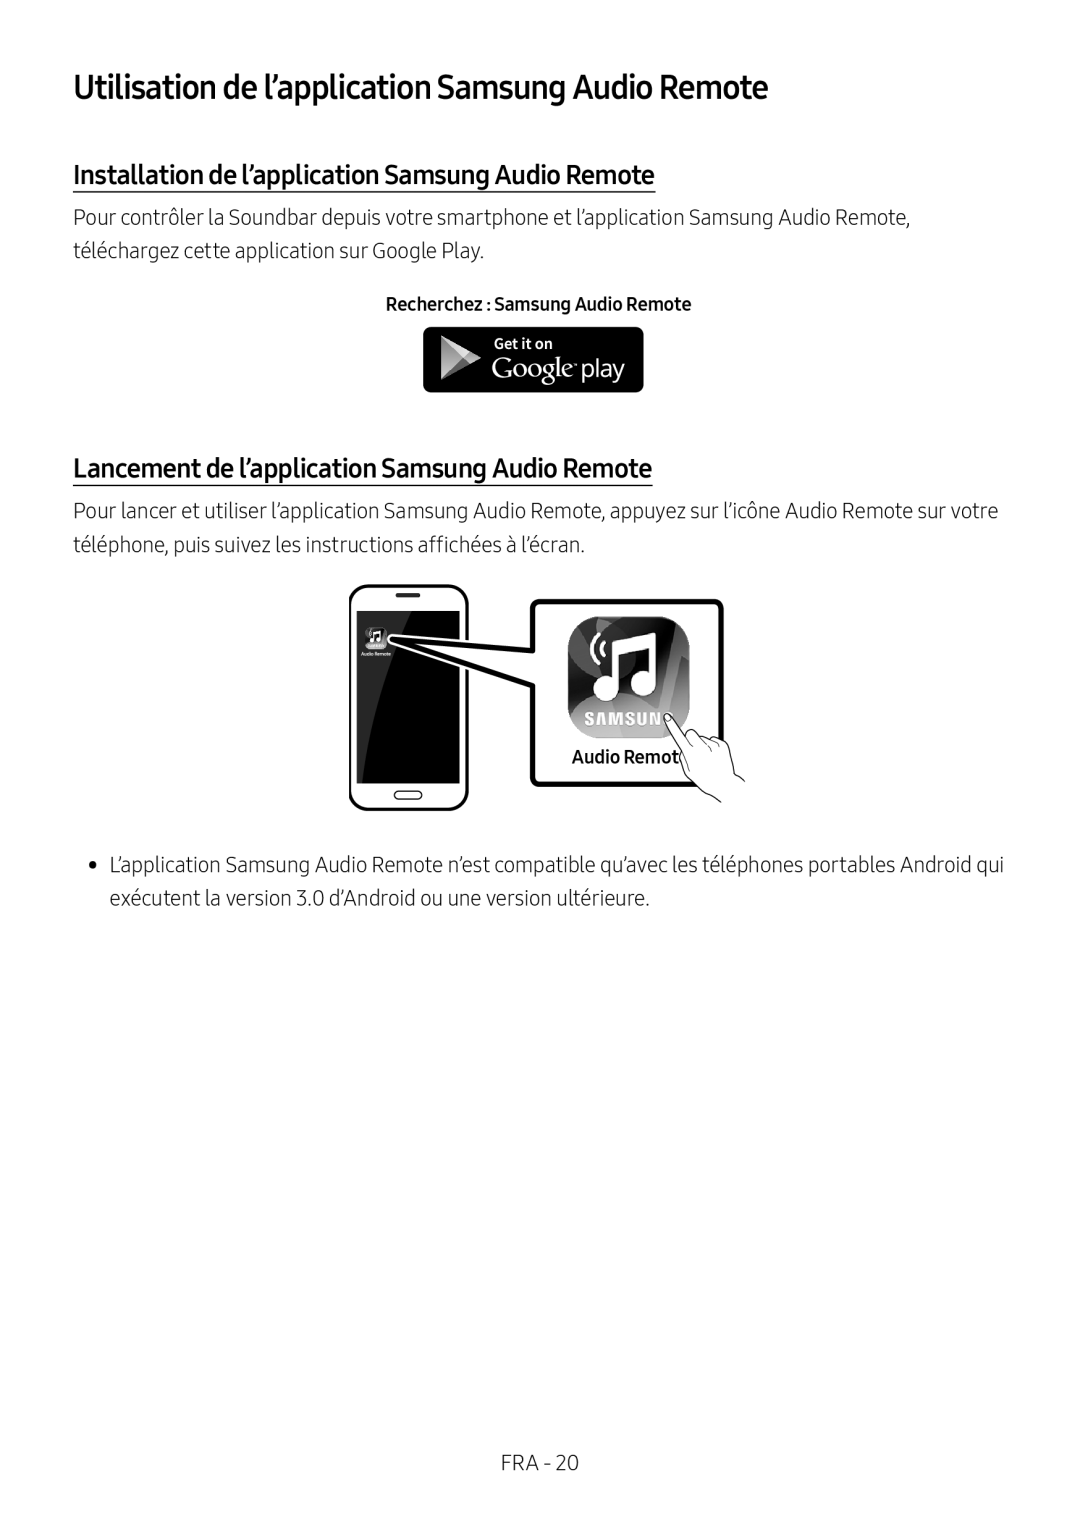 Samsung HW-M460/XE Utilisation de l’application Samsung Audio Remote, Installation de l’application Samsung Audio Remote 